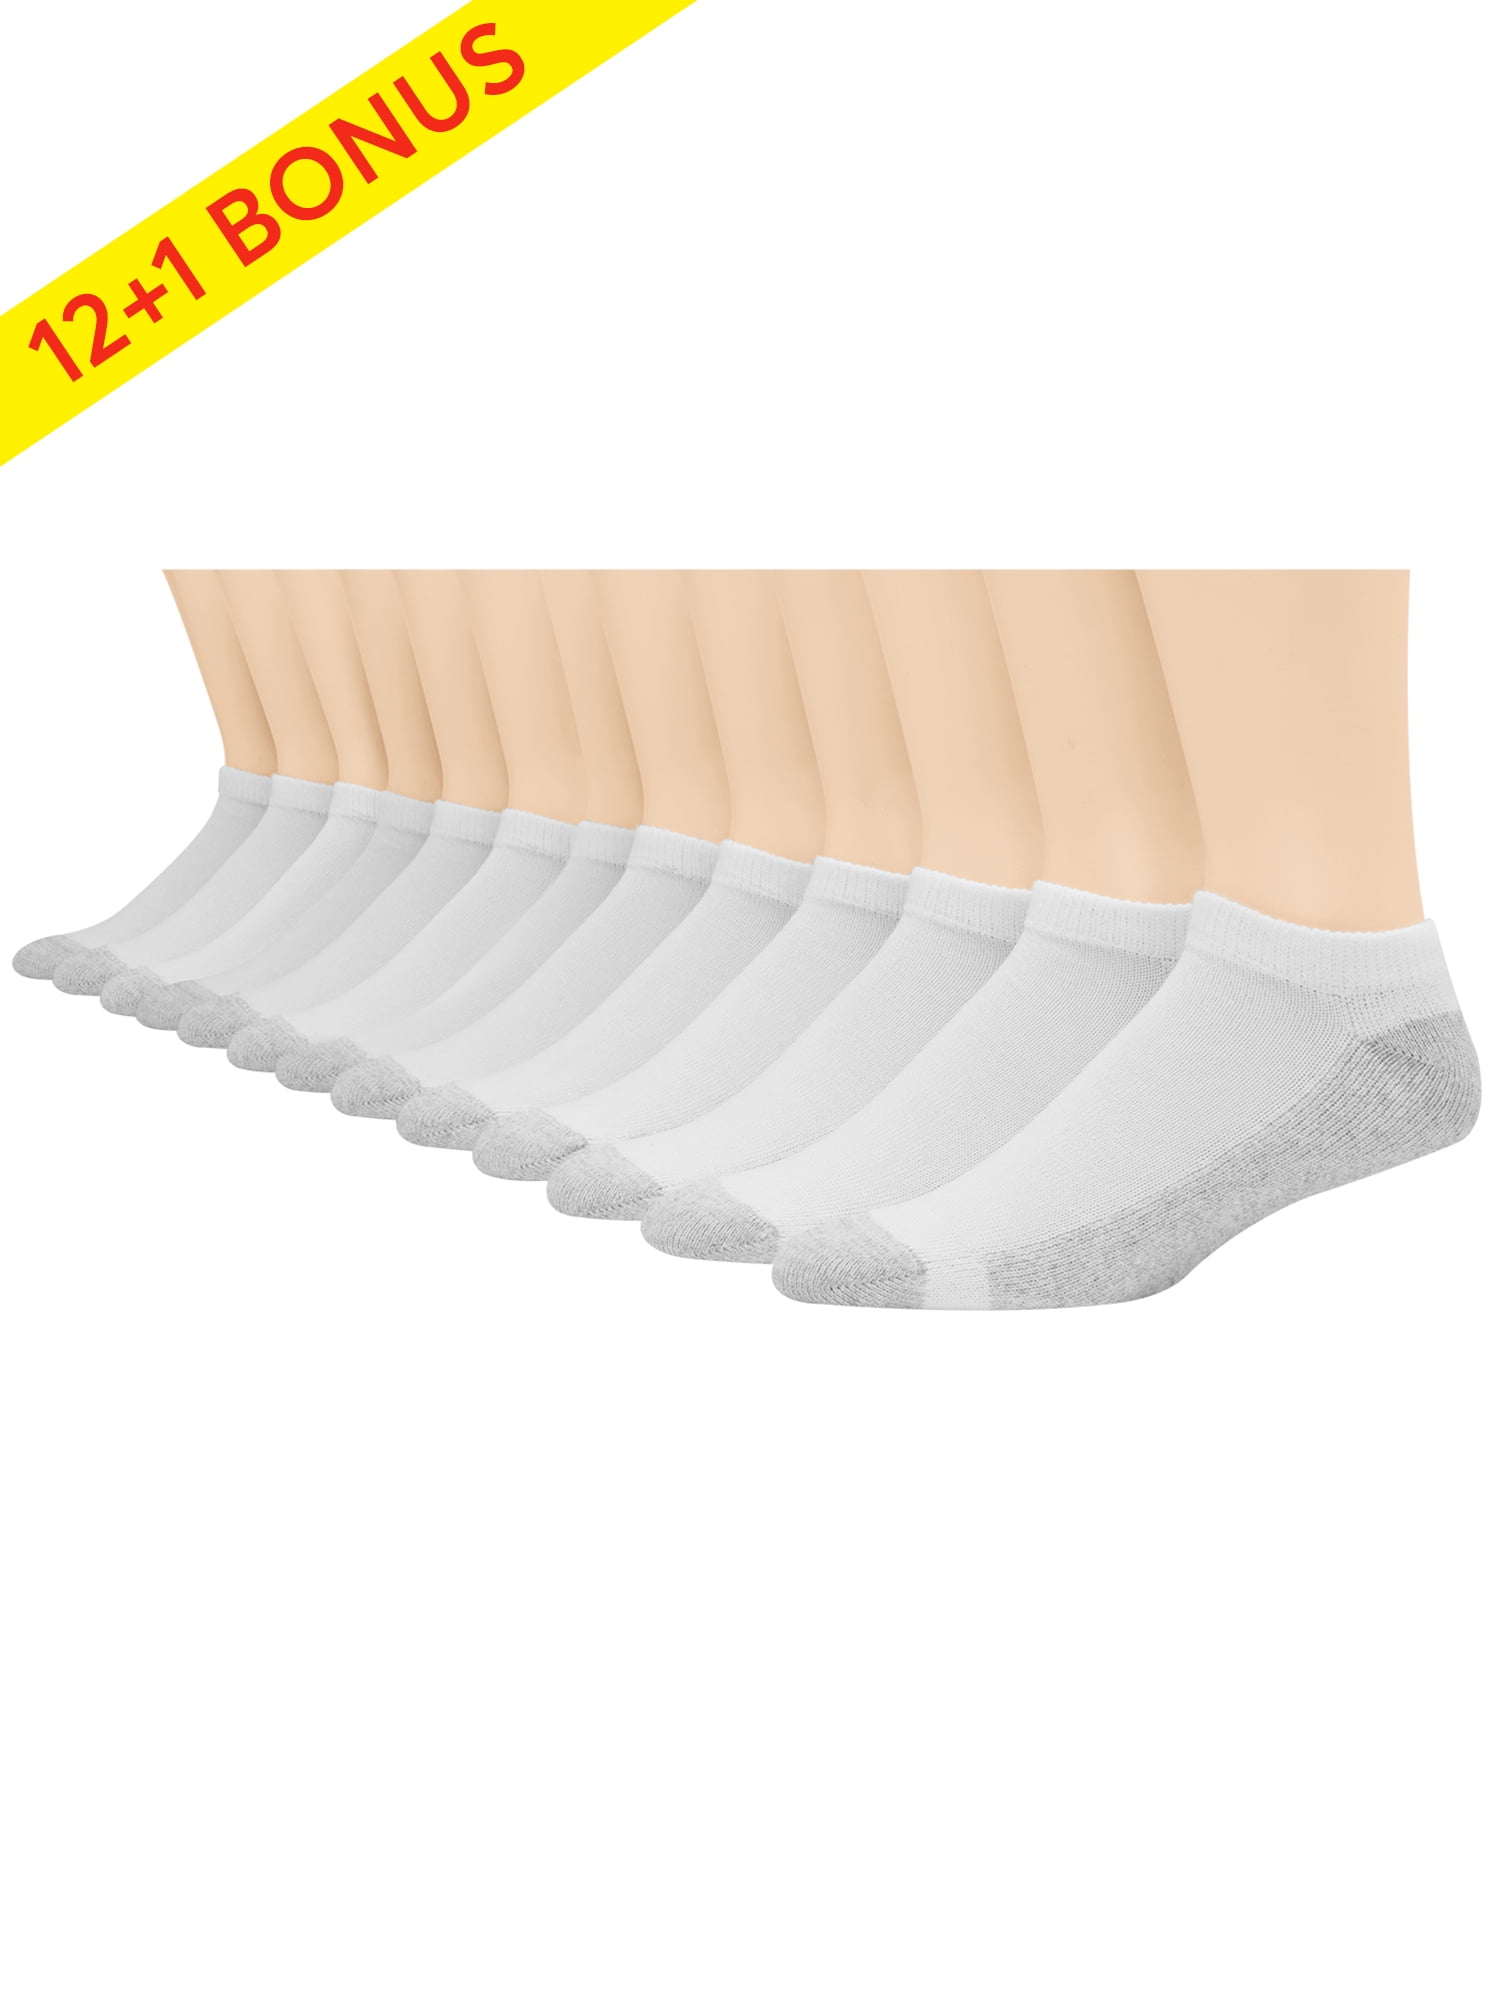 Men's Over The Calf Tube Socks 6-Pack - Walmart.com